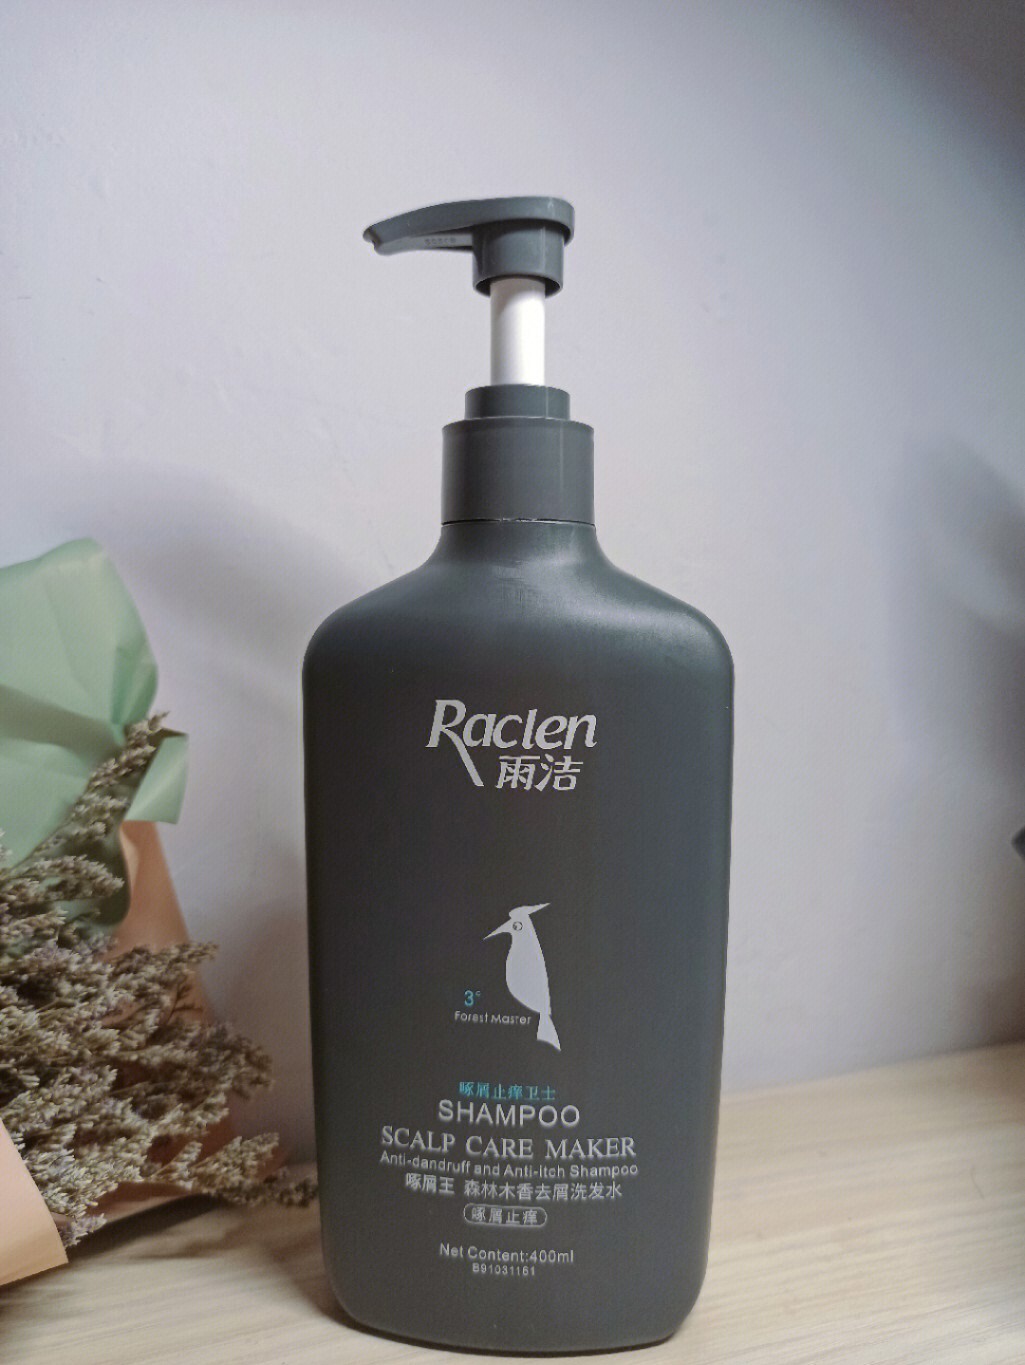 这一款雨洁啄木鸟洗发水真的超级好用,它味道清香不刺鼻,关键是它的